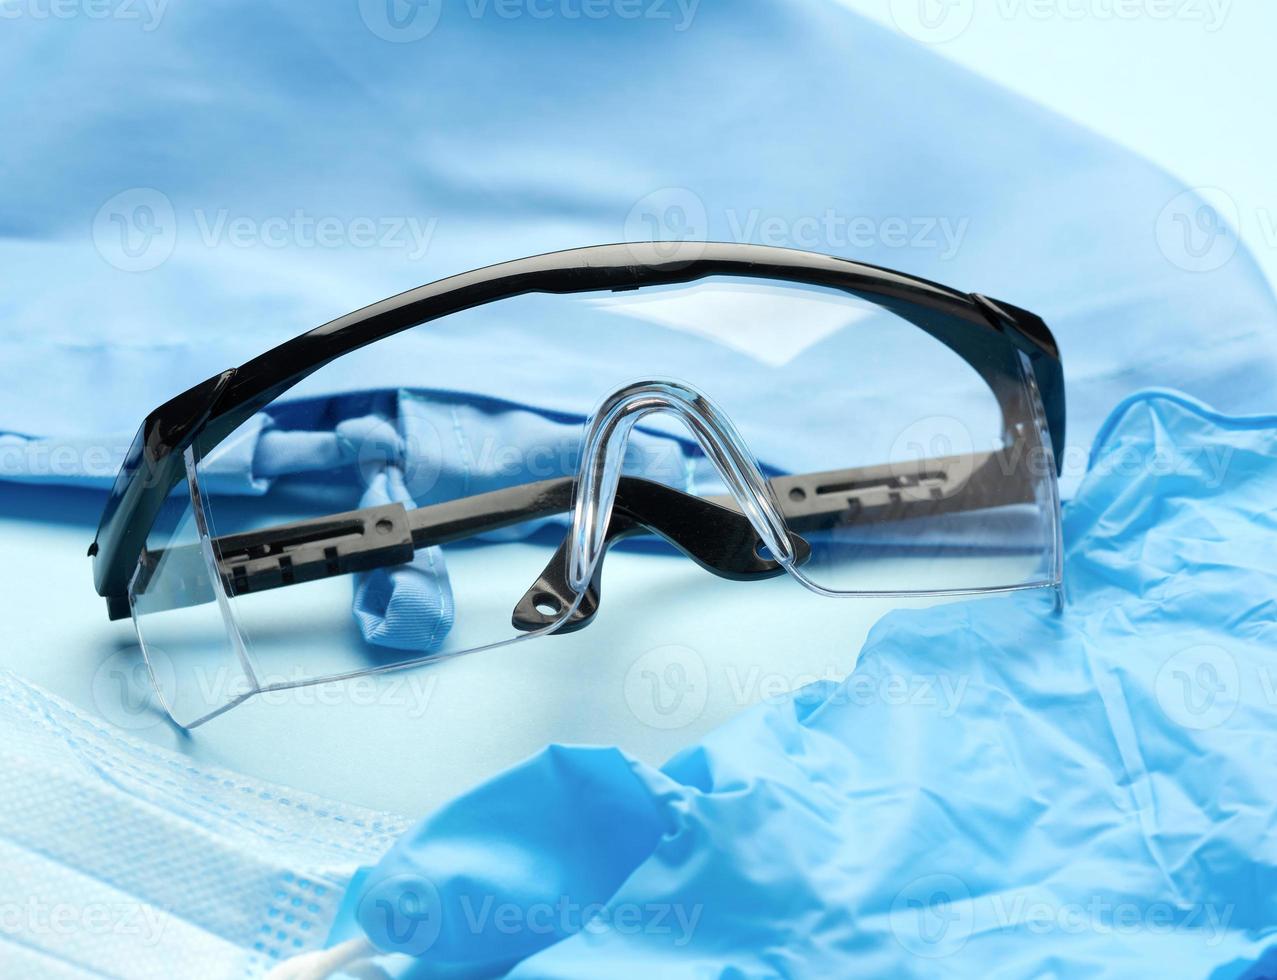 óculos de plástico protetores e máscaras descartáveis em um fundo azul foto